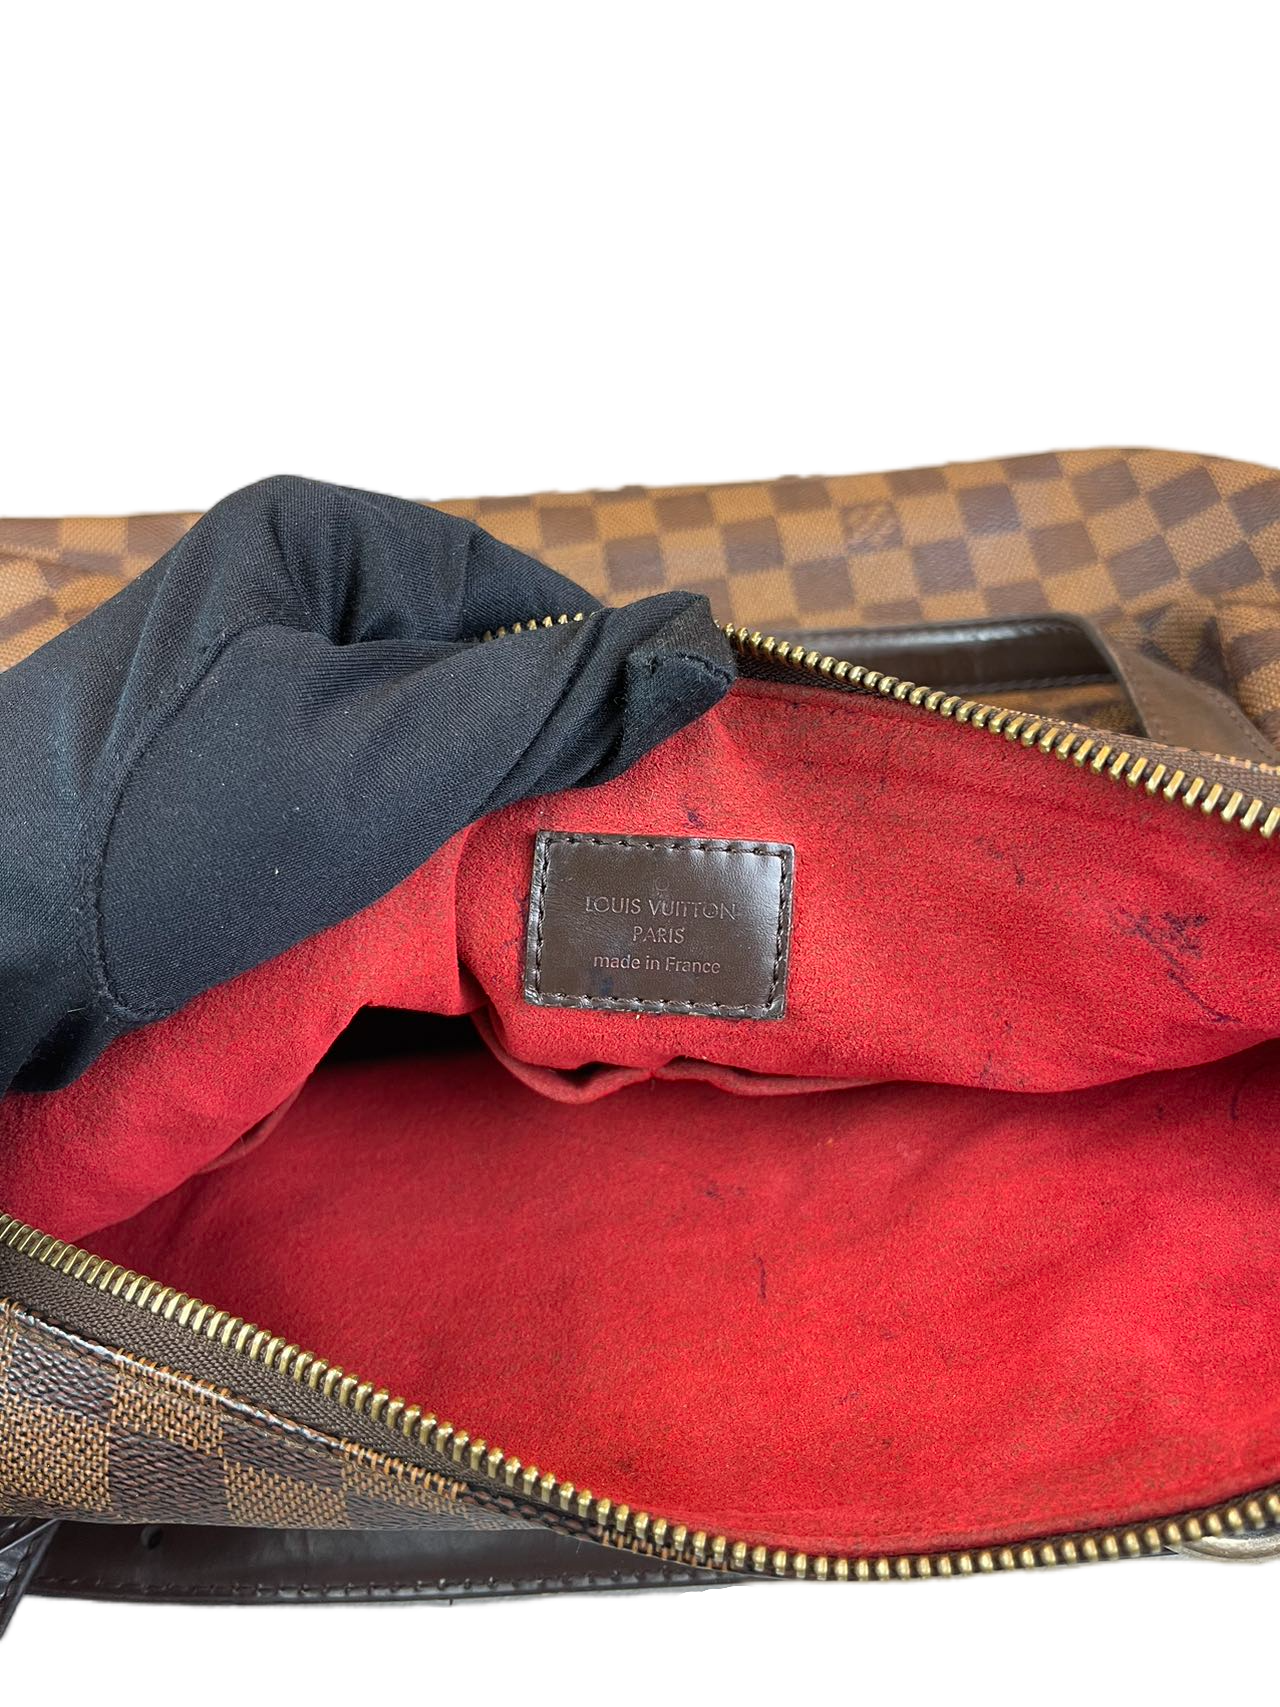 Preloved Louis Vuitton Damier Ebene Evora Shoulder Bag